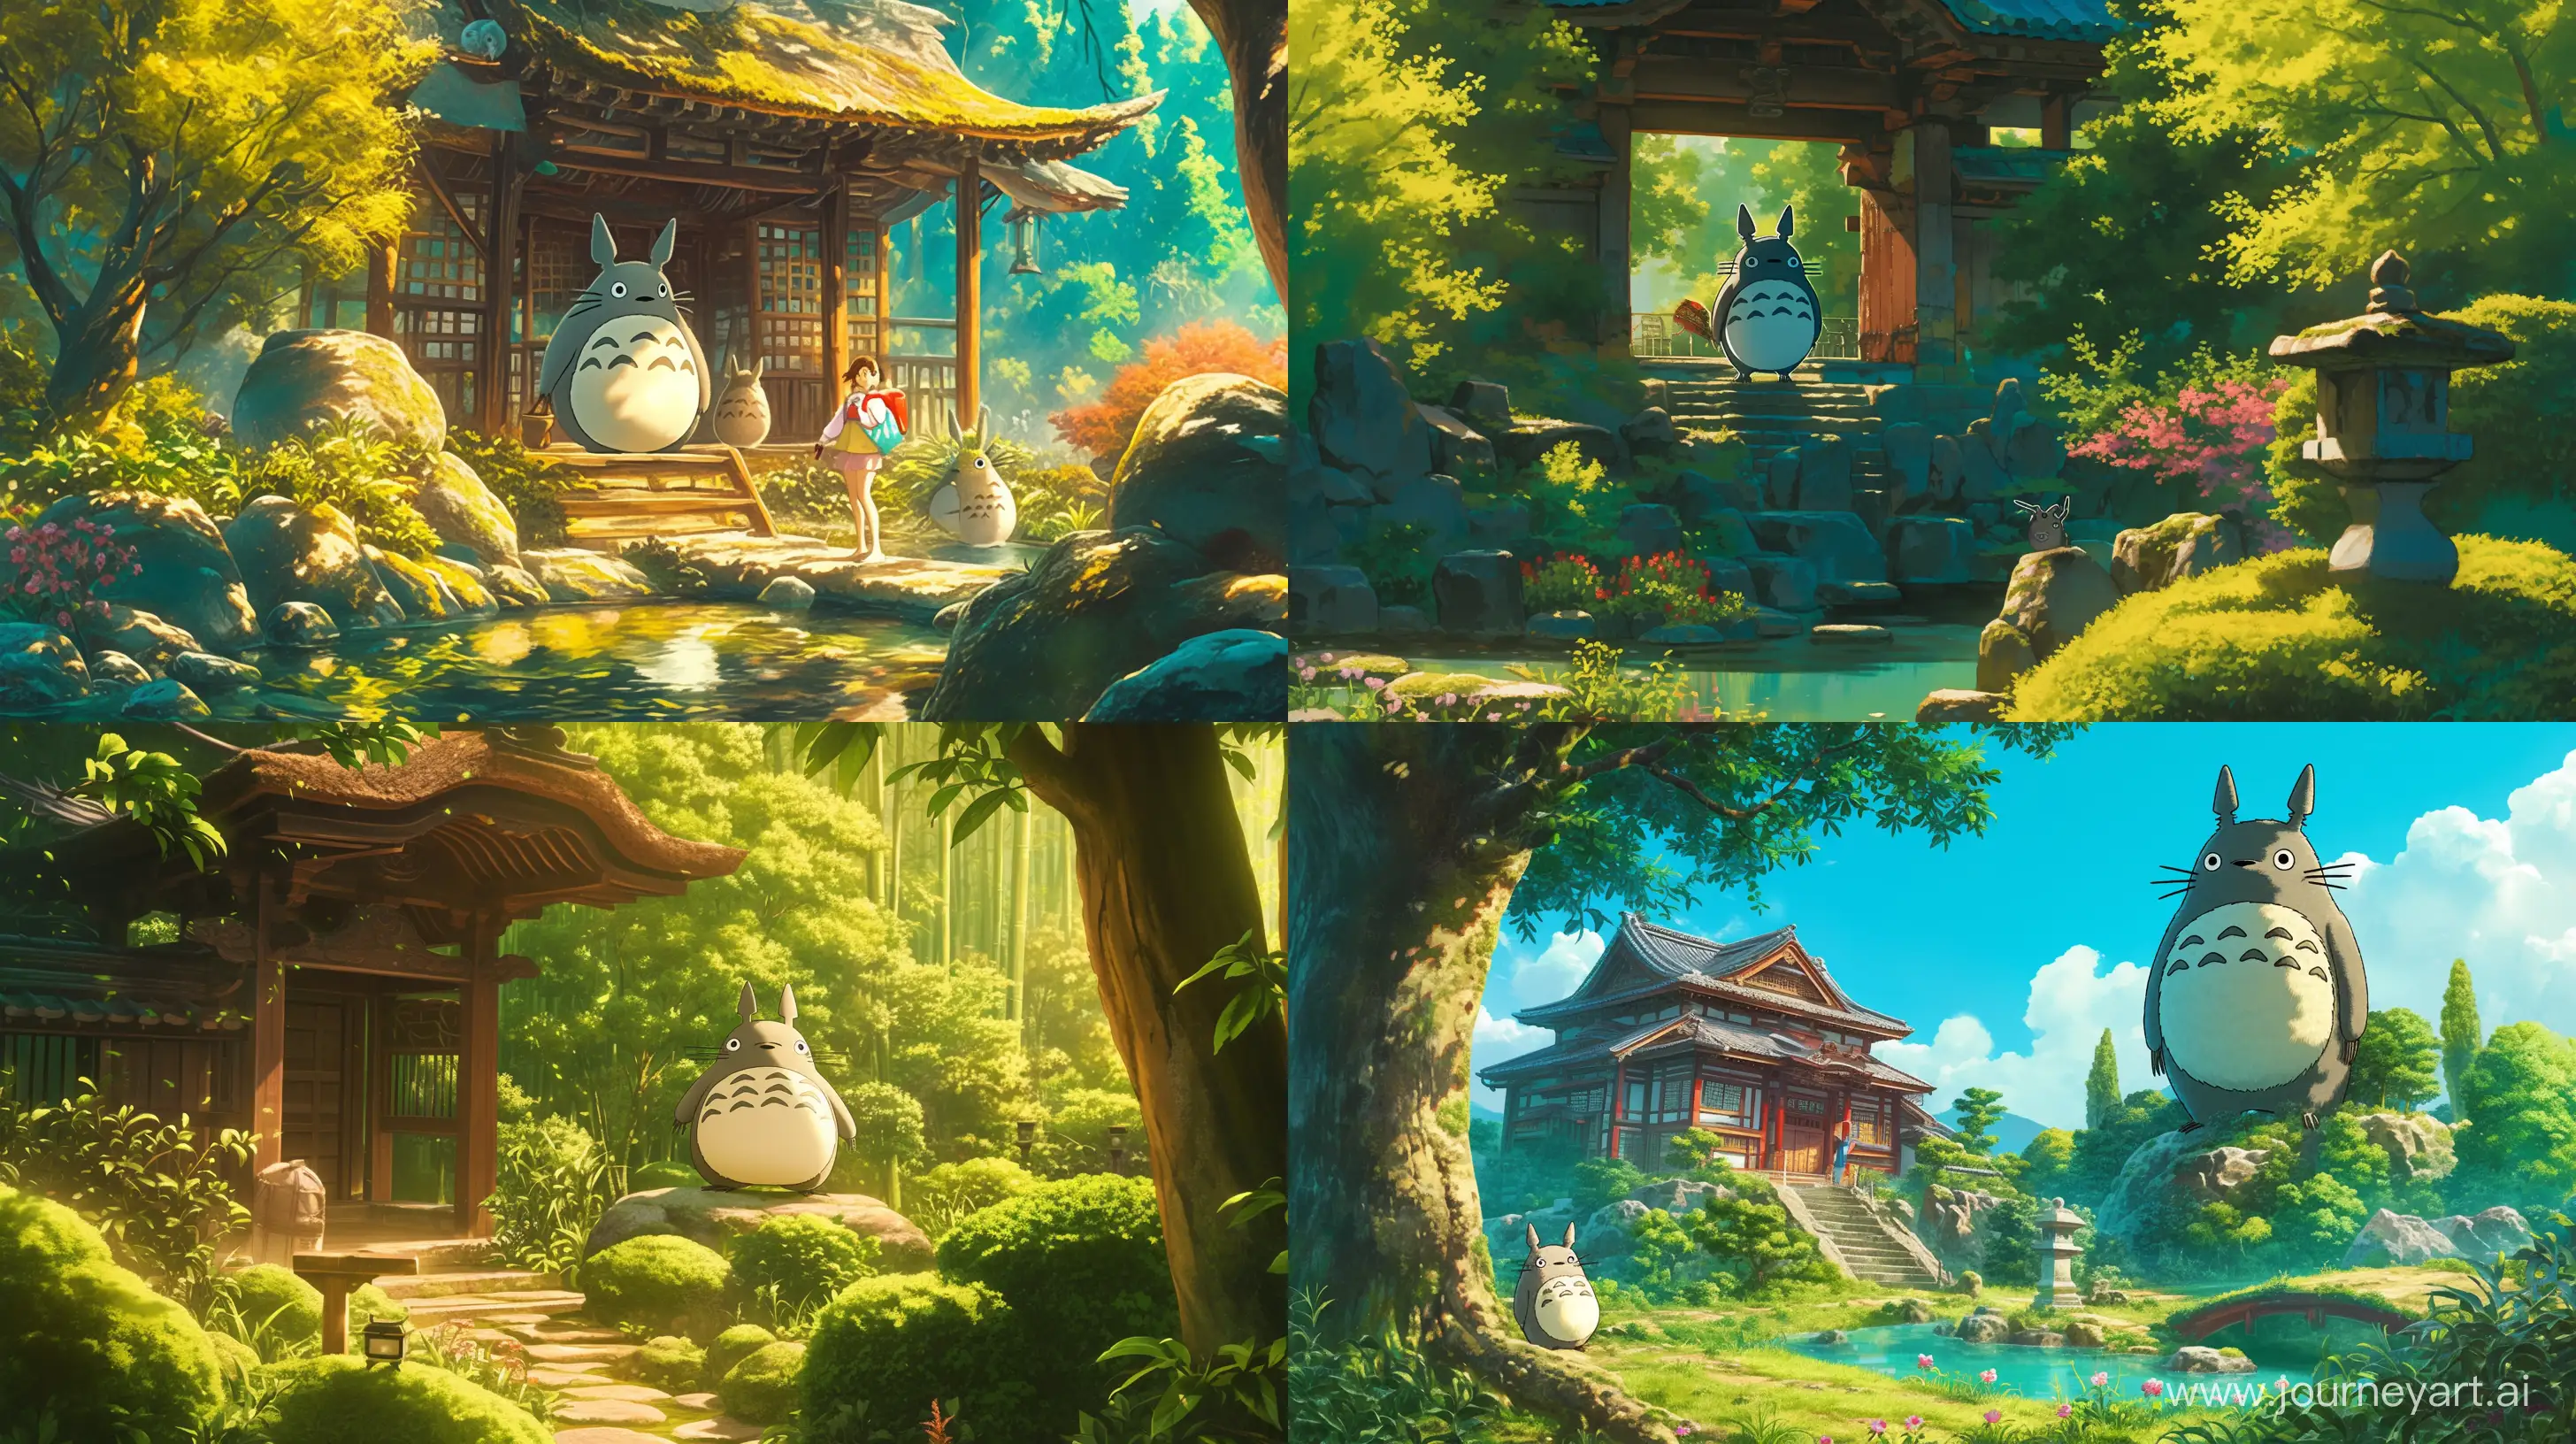 Totoro guiding through an ancient Japanese temple garden --ar 16:9 --niji 6